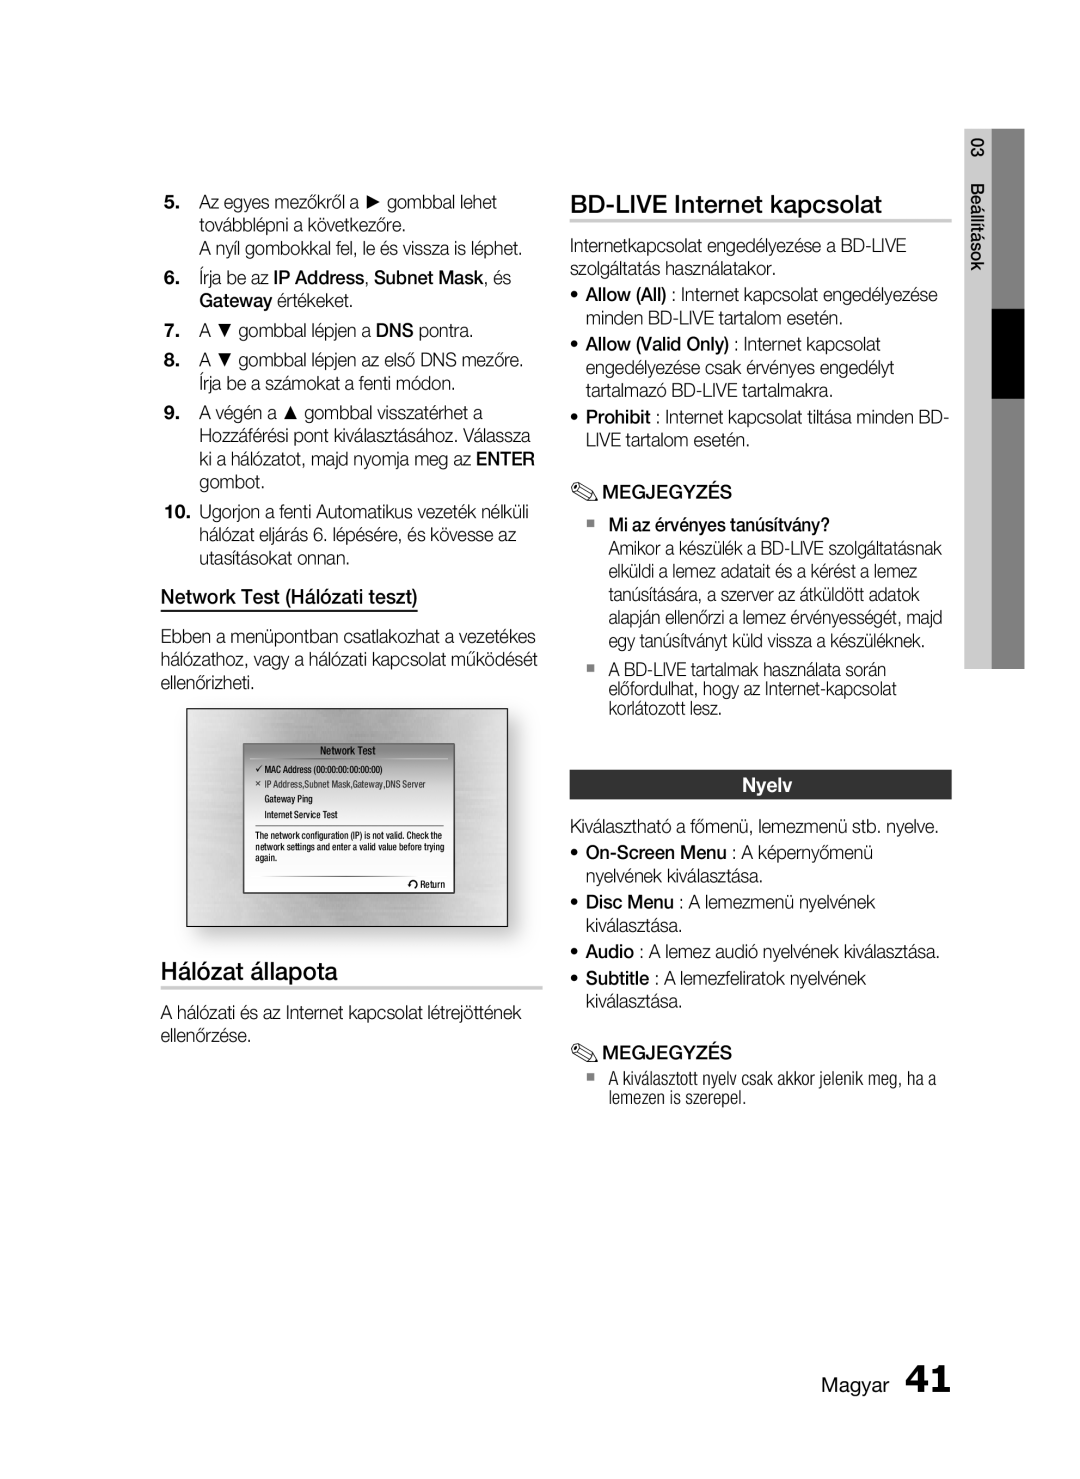 Samsung HT-C5900/XEE manual Hálózat állapota, BD-LIVE Internet kapcsolat, Network Test Hálózati teszt, Nyelv, Magyar 